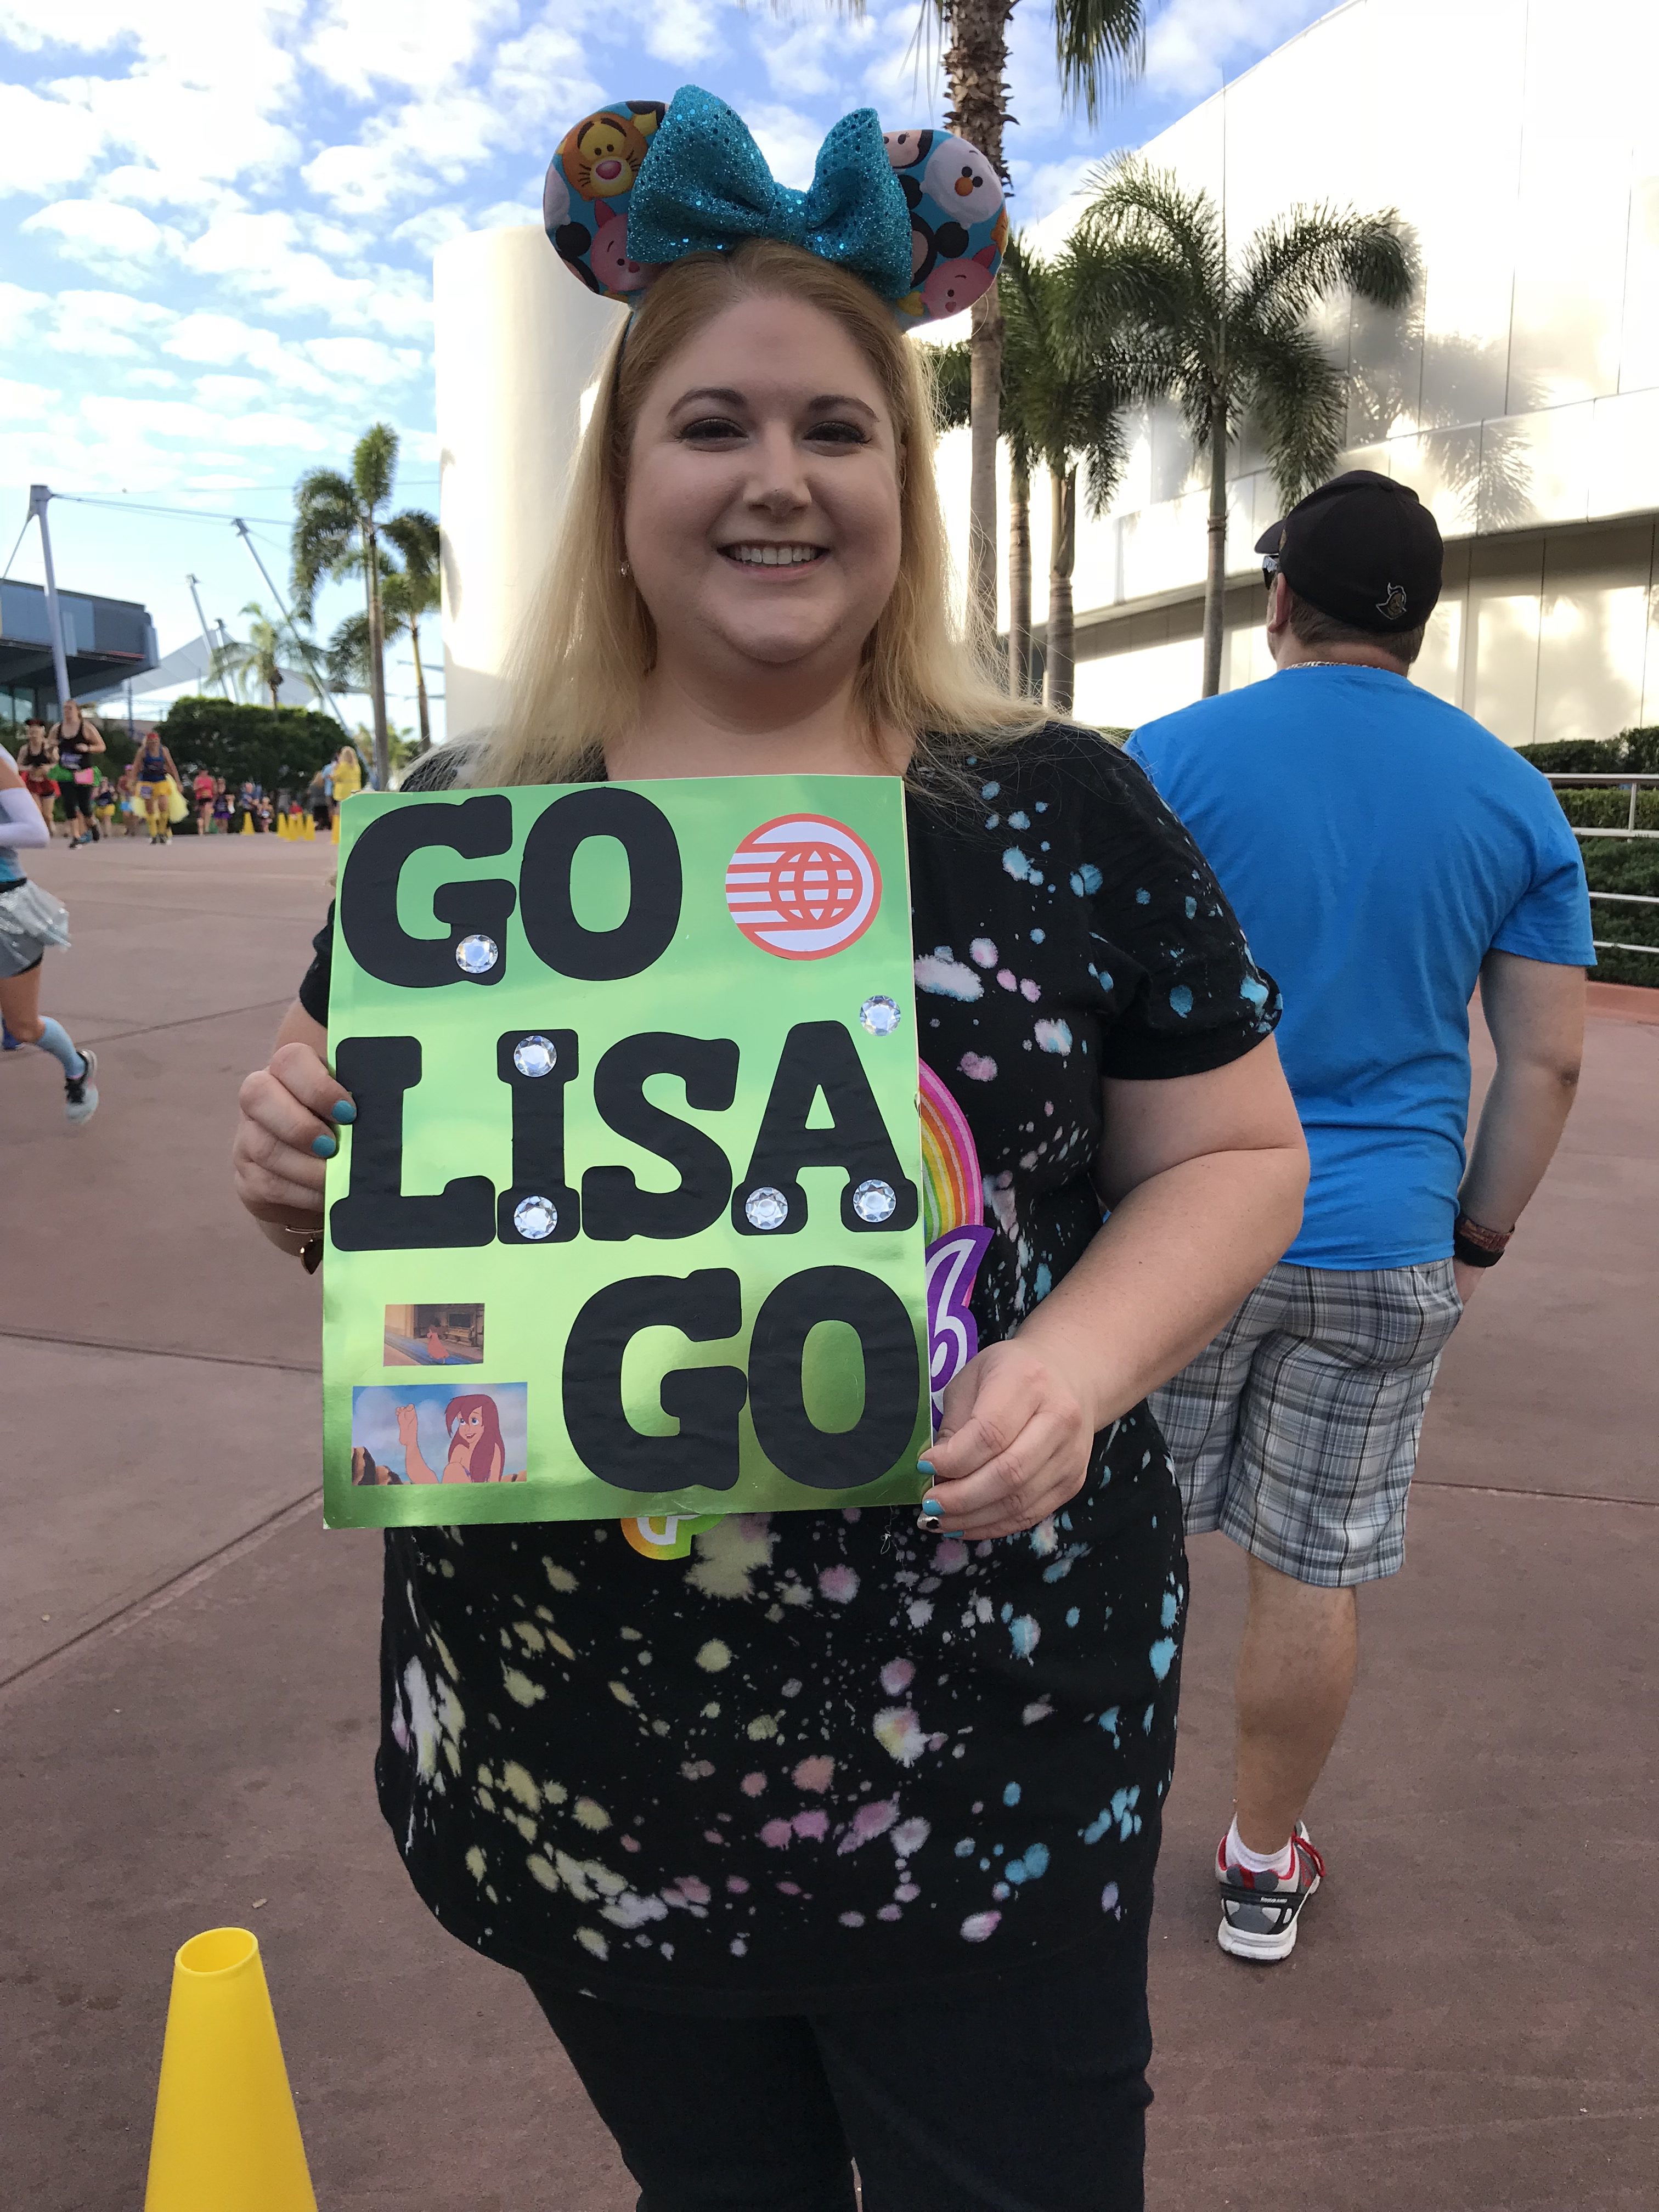 My friend Lisa cheering me on!